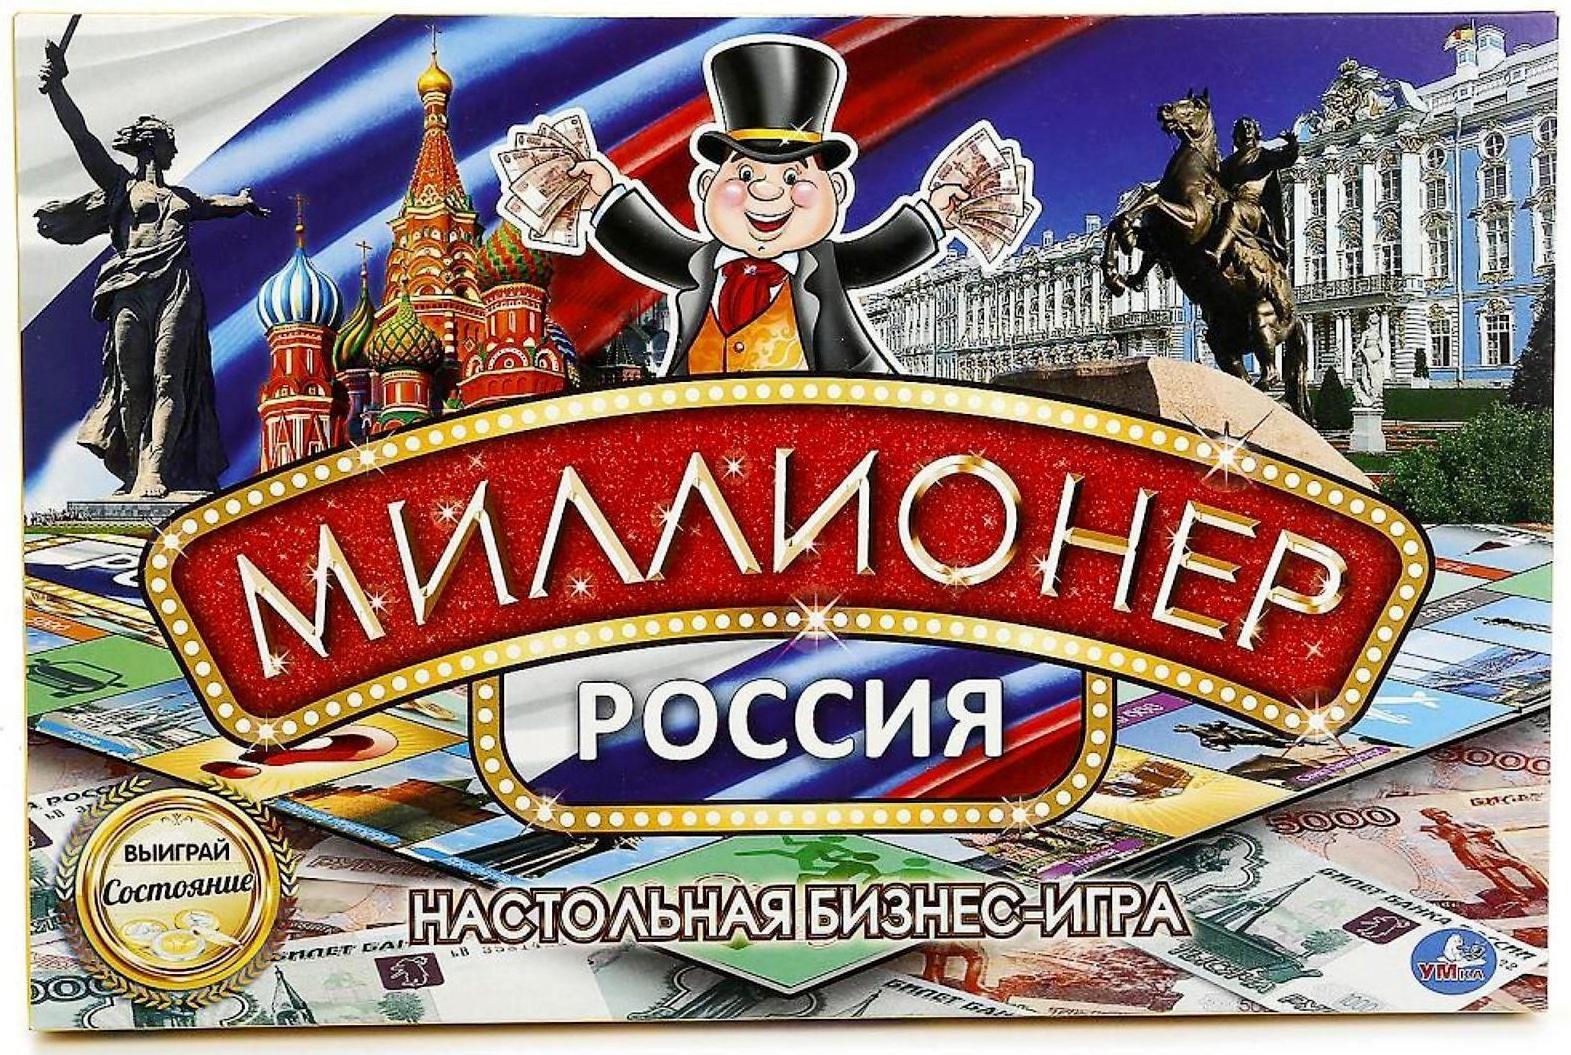 Настольная игра «Миллионер Россия»